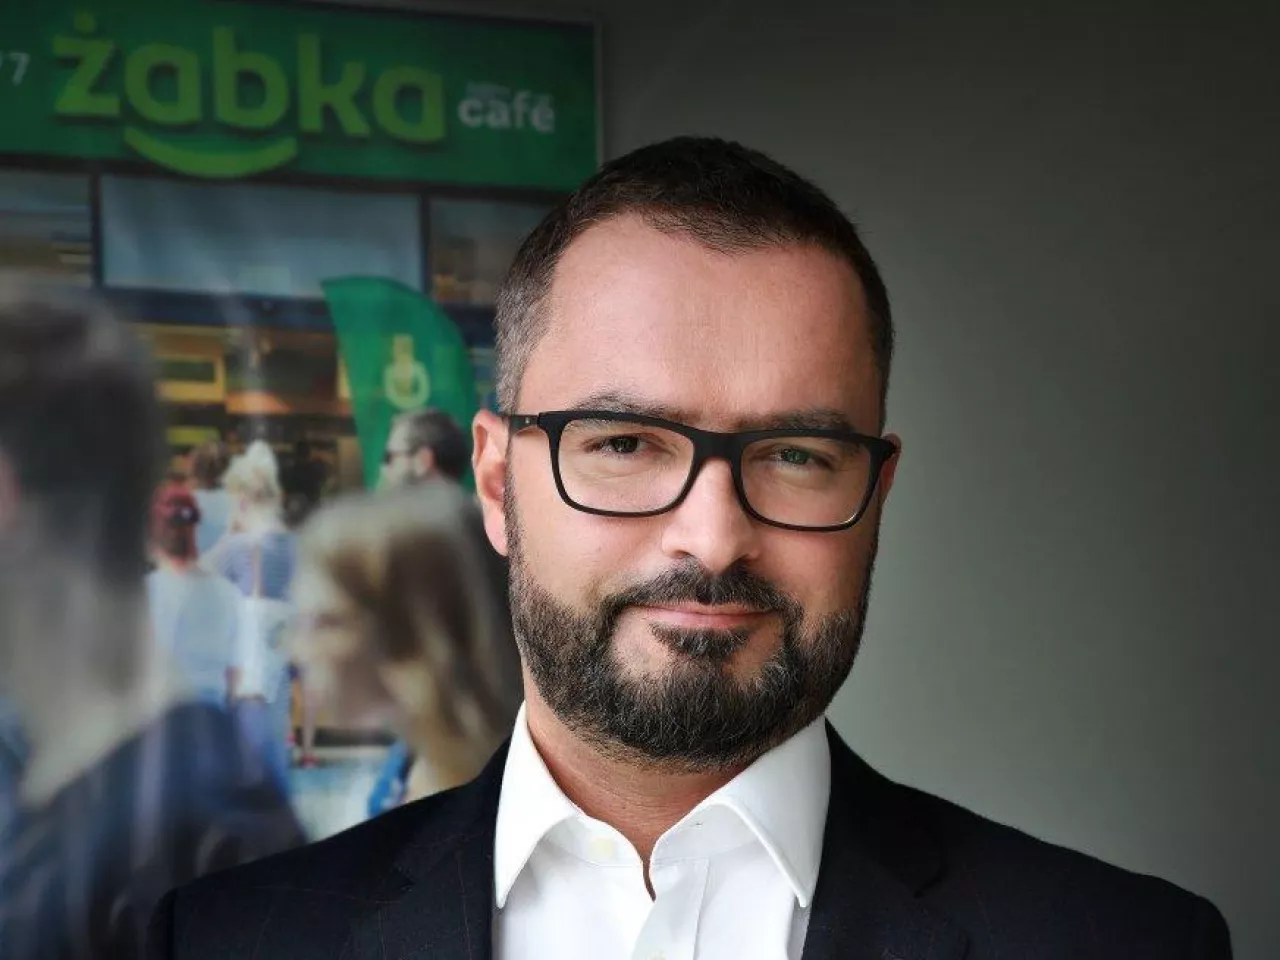 Tomasz Suchański, prezes Żabka Polska (fot. mat. prasowe)